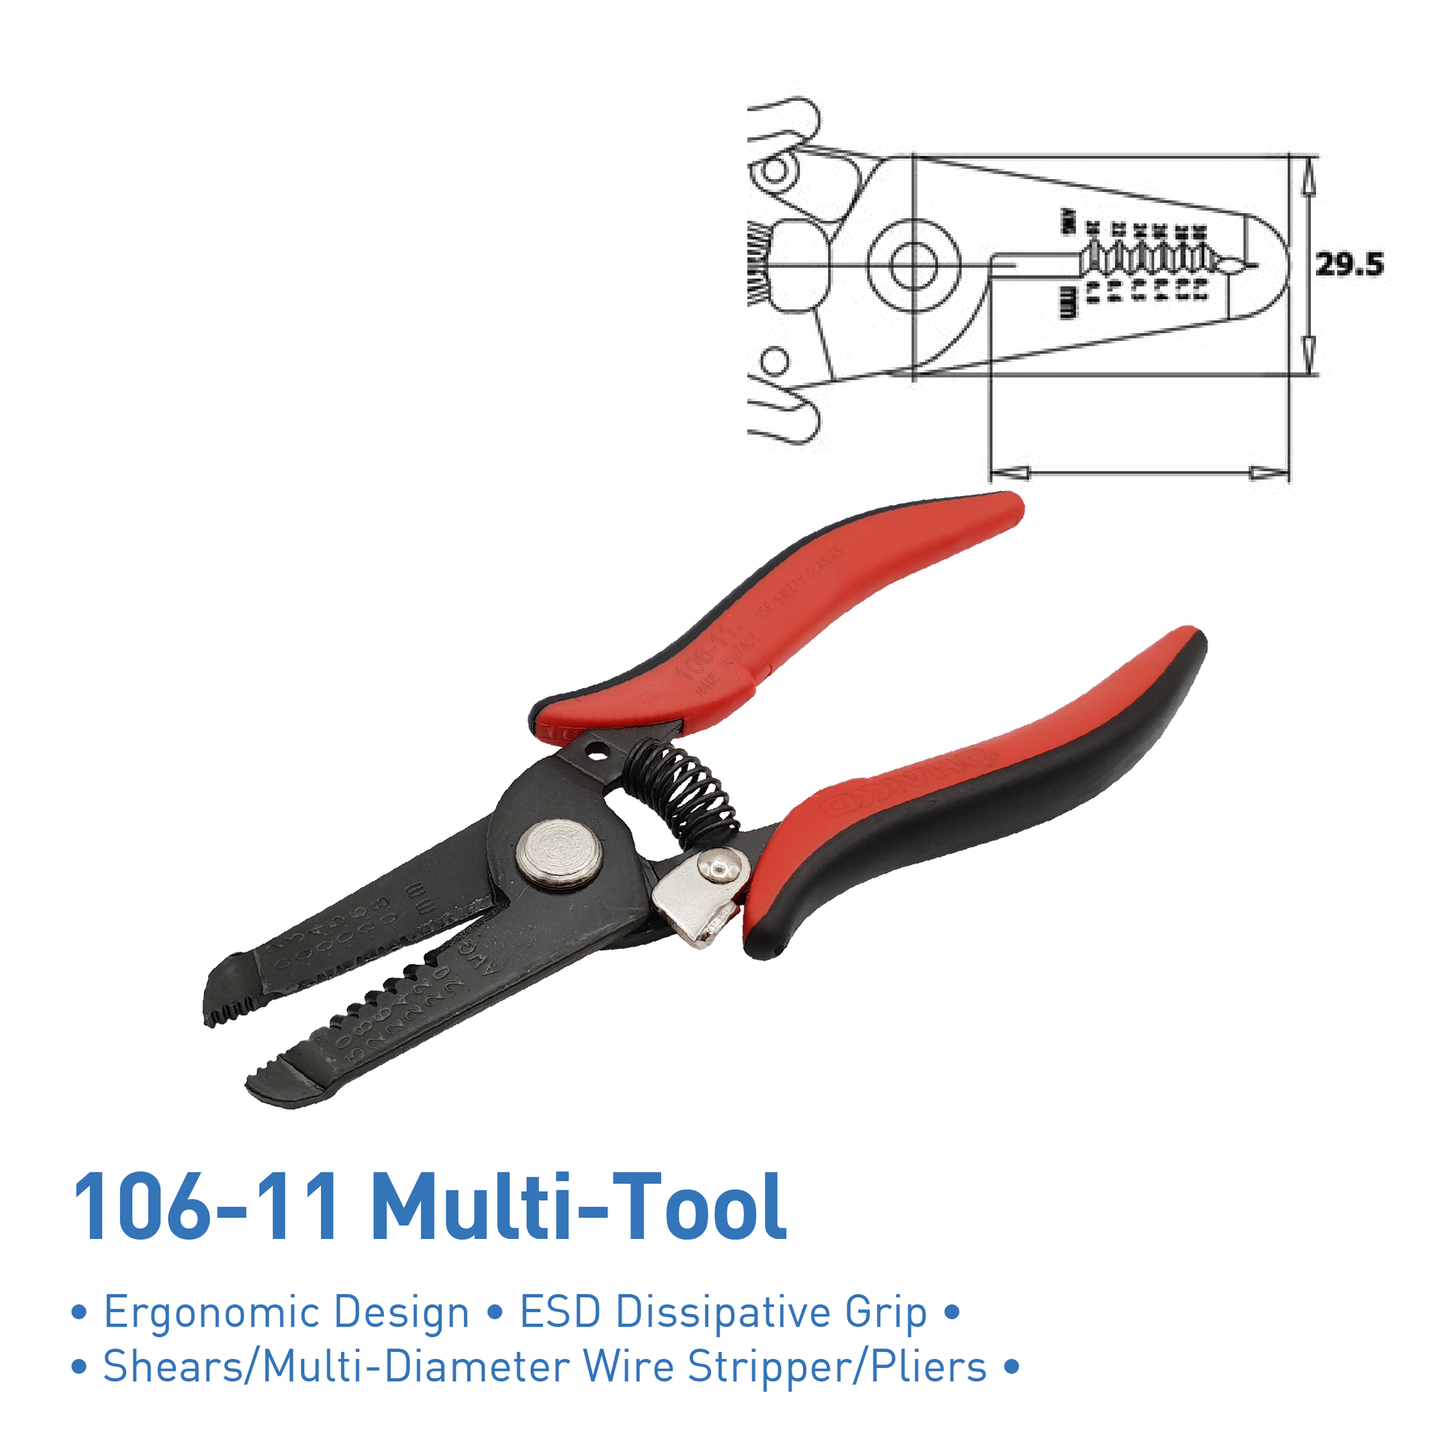 106-11 Multi-Tool